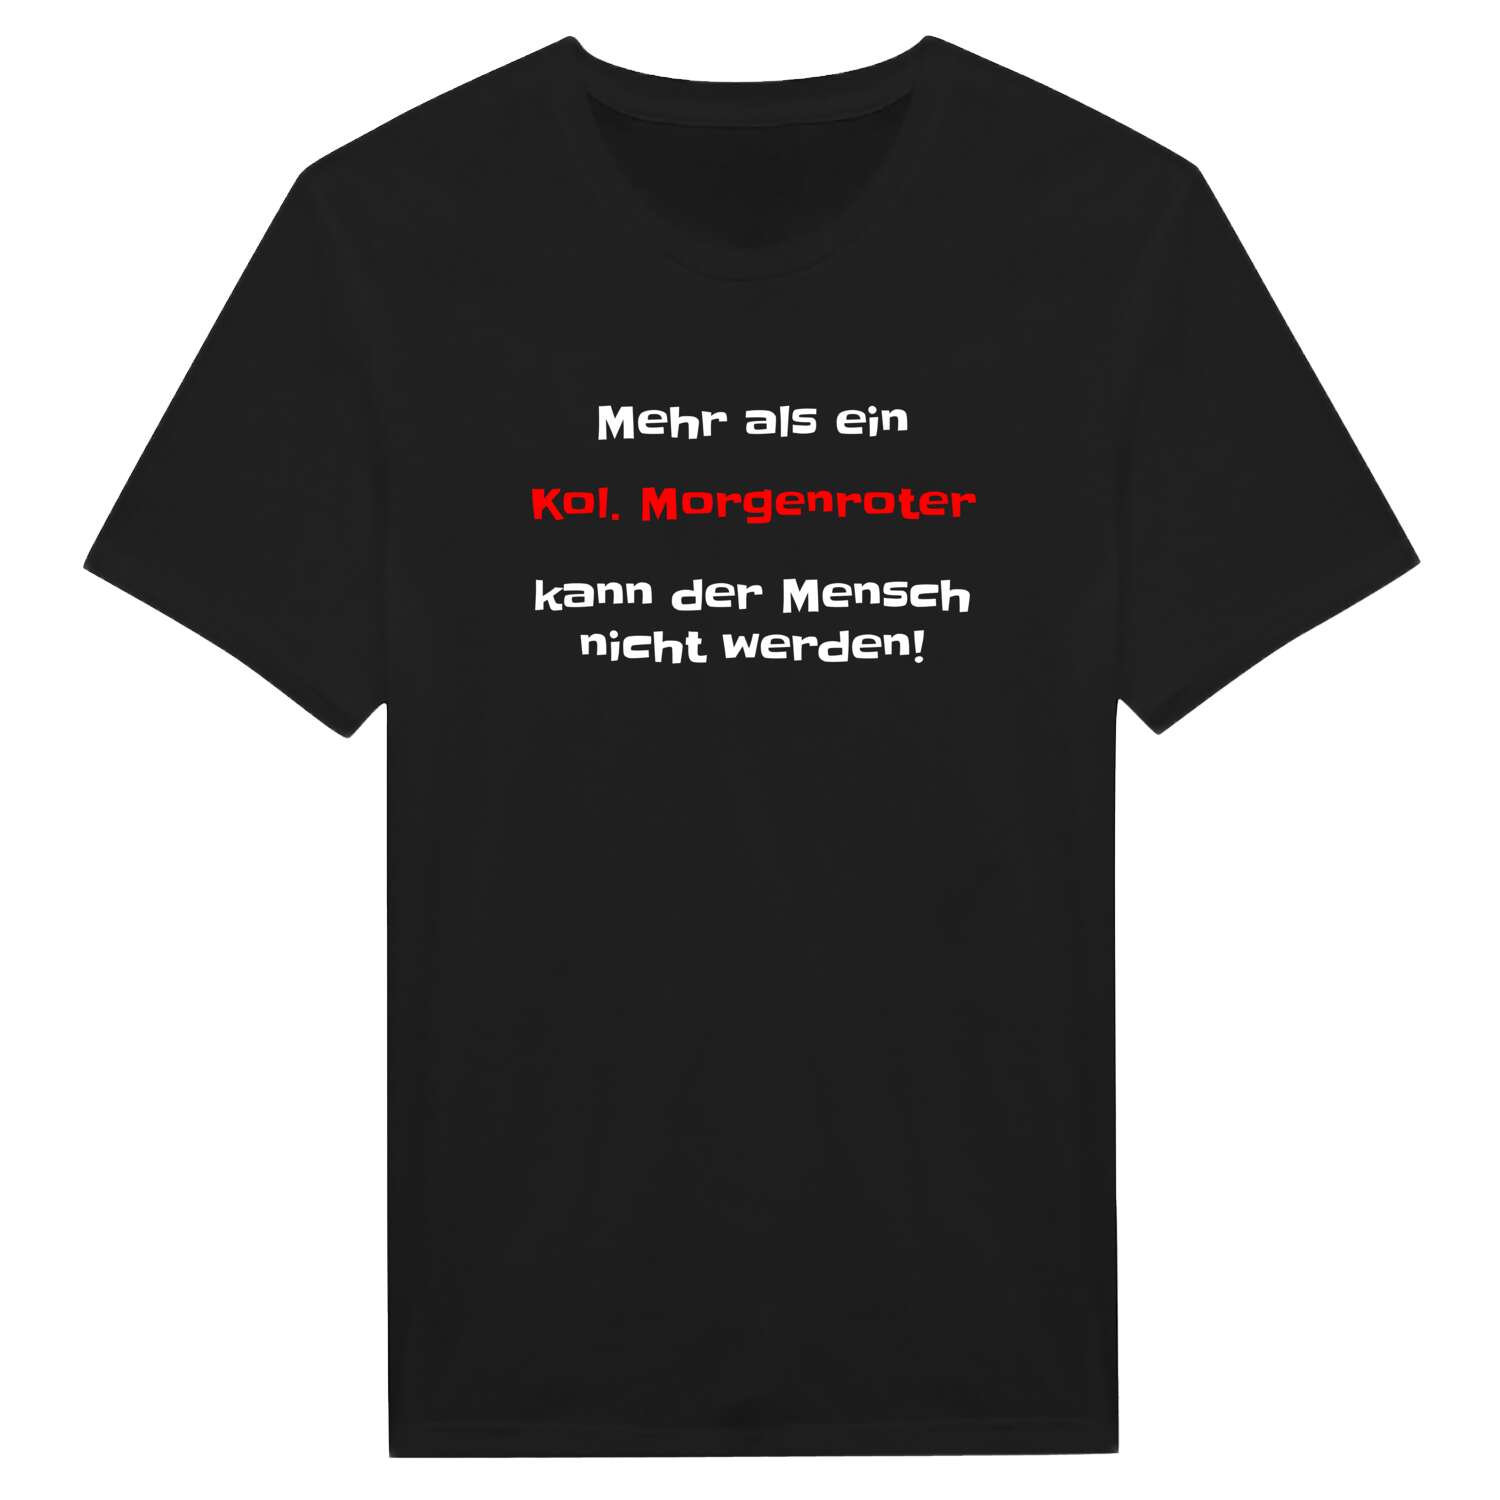 Kol. Morgenrot T-Shirt »Mehr als ein«